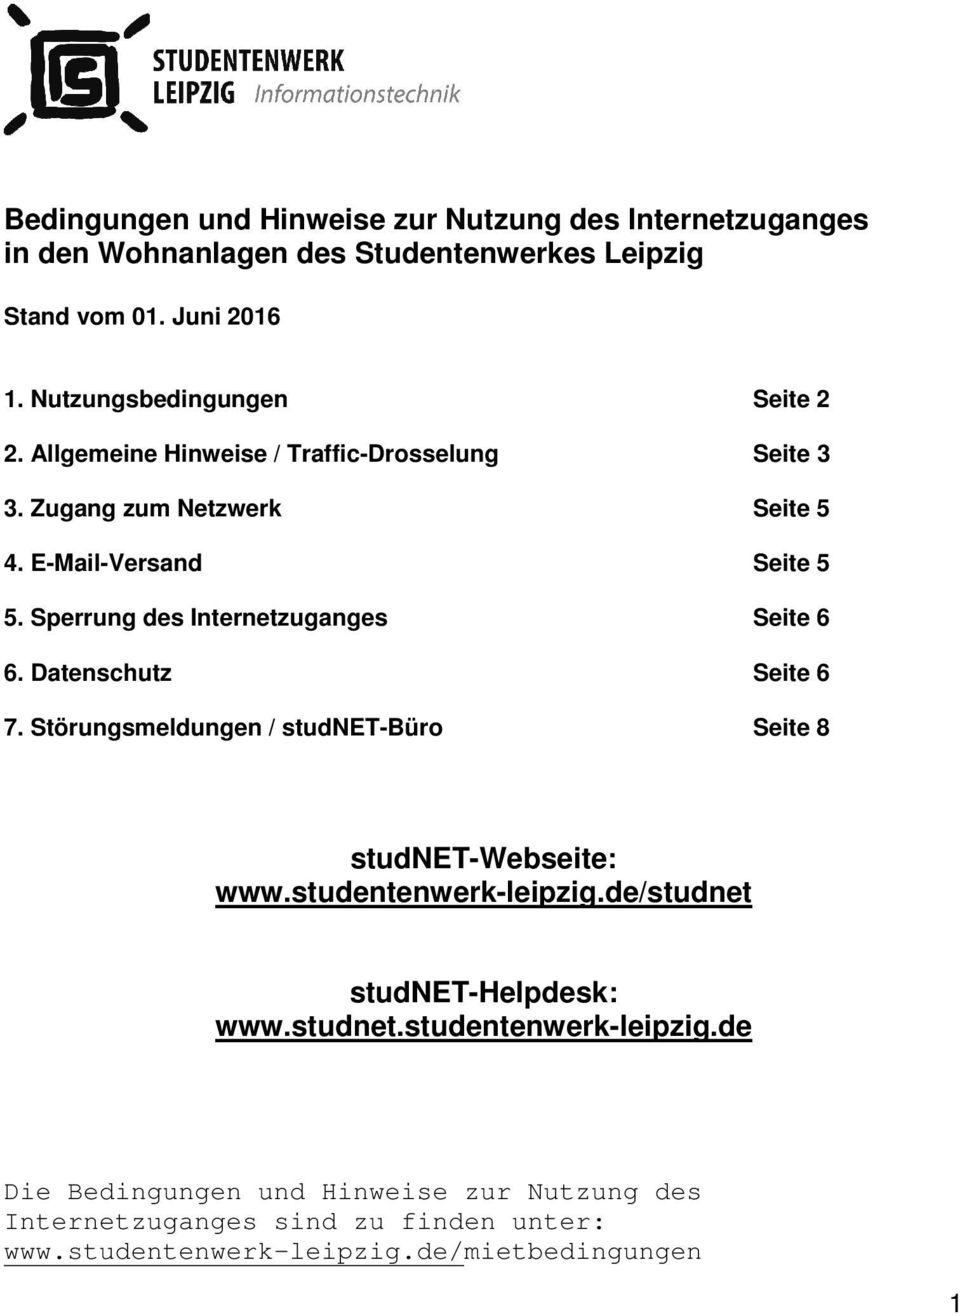 Sperrung des Internetzuganges Seite 6 6. Datenschutz Seite 6 7. Störungsmeldungen / studnet-büro Seite 8 studnet-webseite: www.studentenwerk-leipzig.